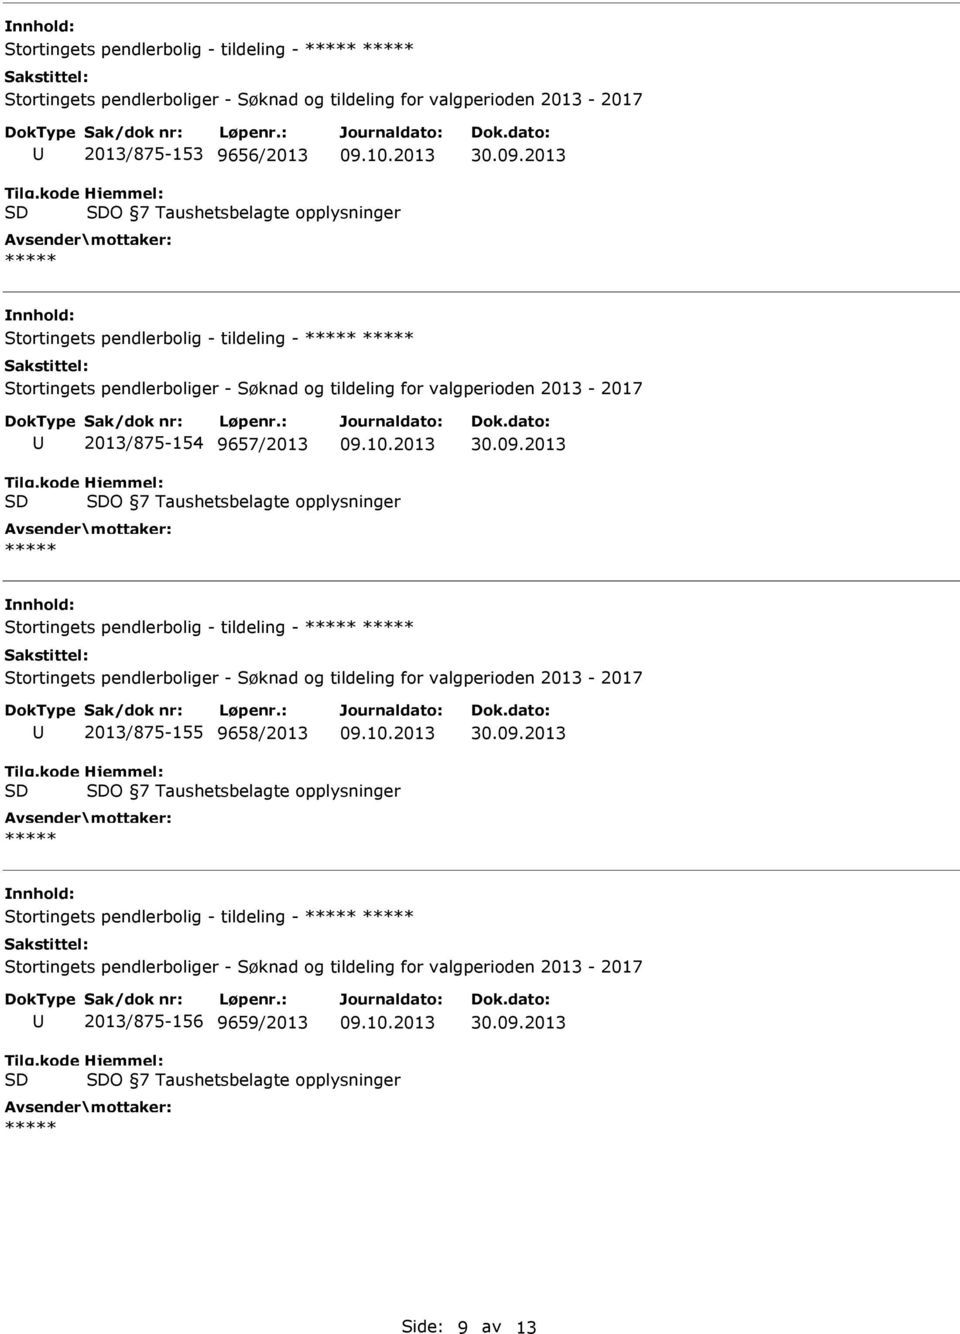 Stortingets pendlerbolig - tildeling - 2013/875-155 9658/2013 O 7 Taushetsbelagte opplysninger